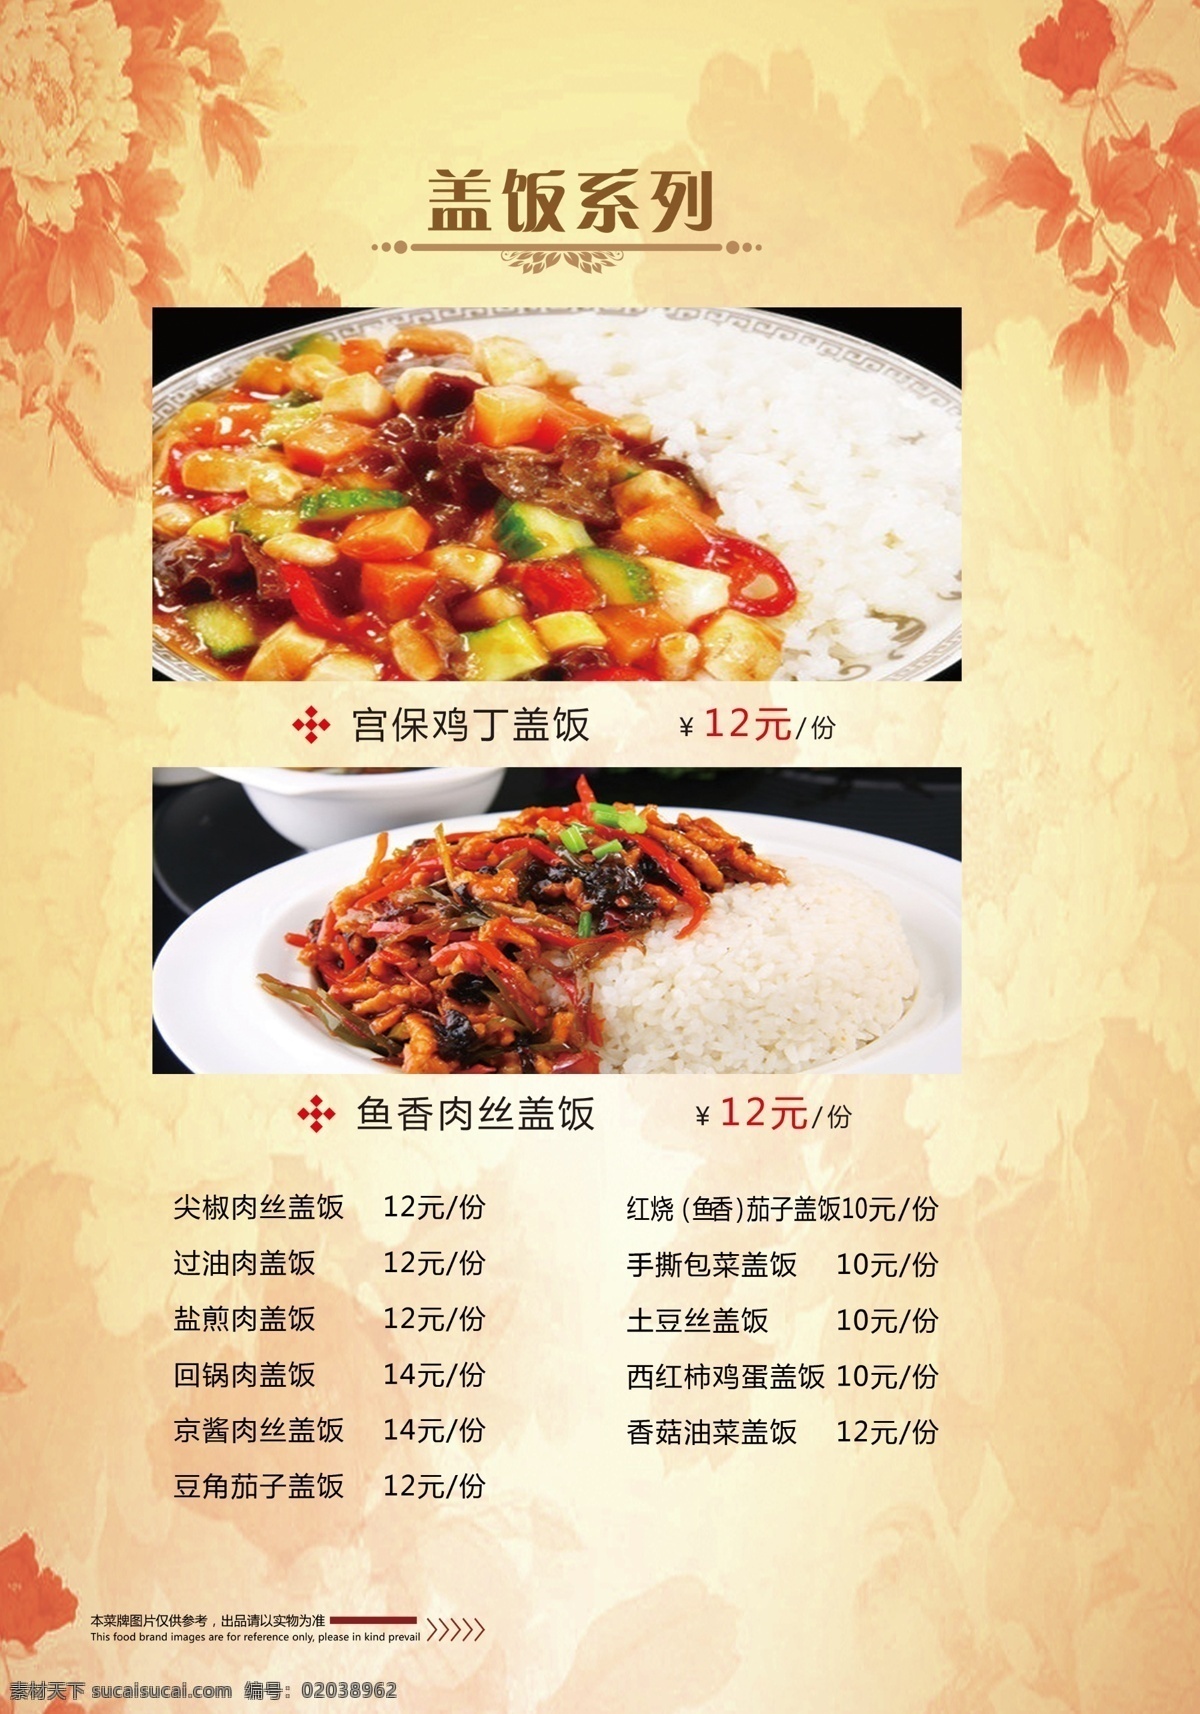 菜谱盖饭系列 菜谱 盖饭系列 中国风 黄色背景 牡丹